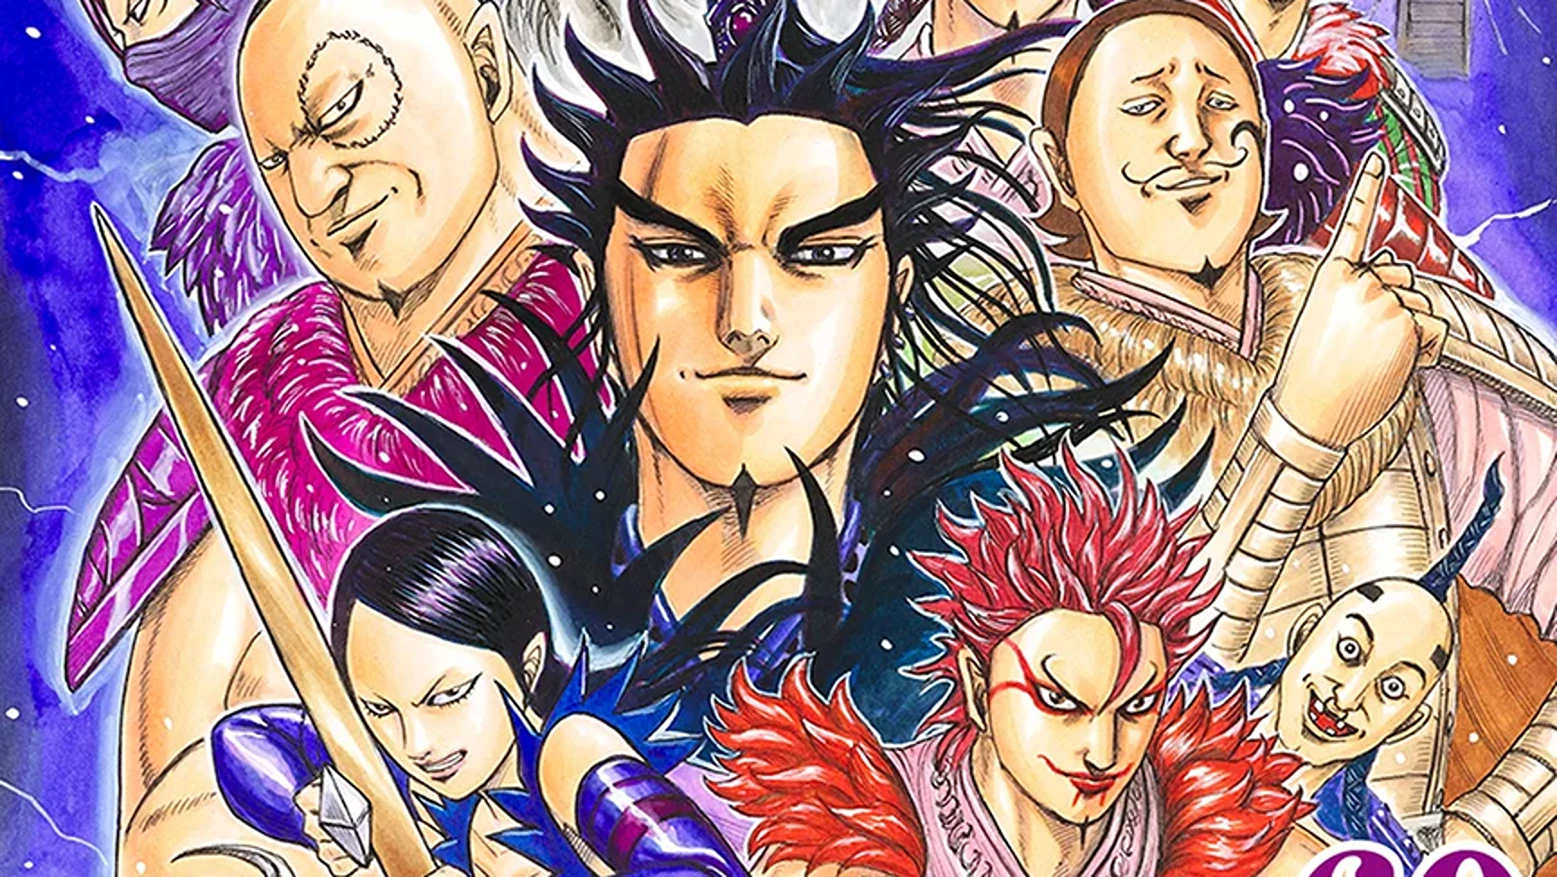 Blue Lock trở thành Manga bán chạy nhất năm 2023 khi vượt qua các Manga như One Piece & Jujutsu Kaisen